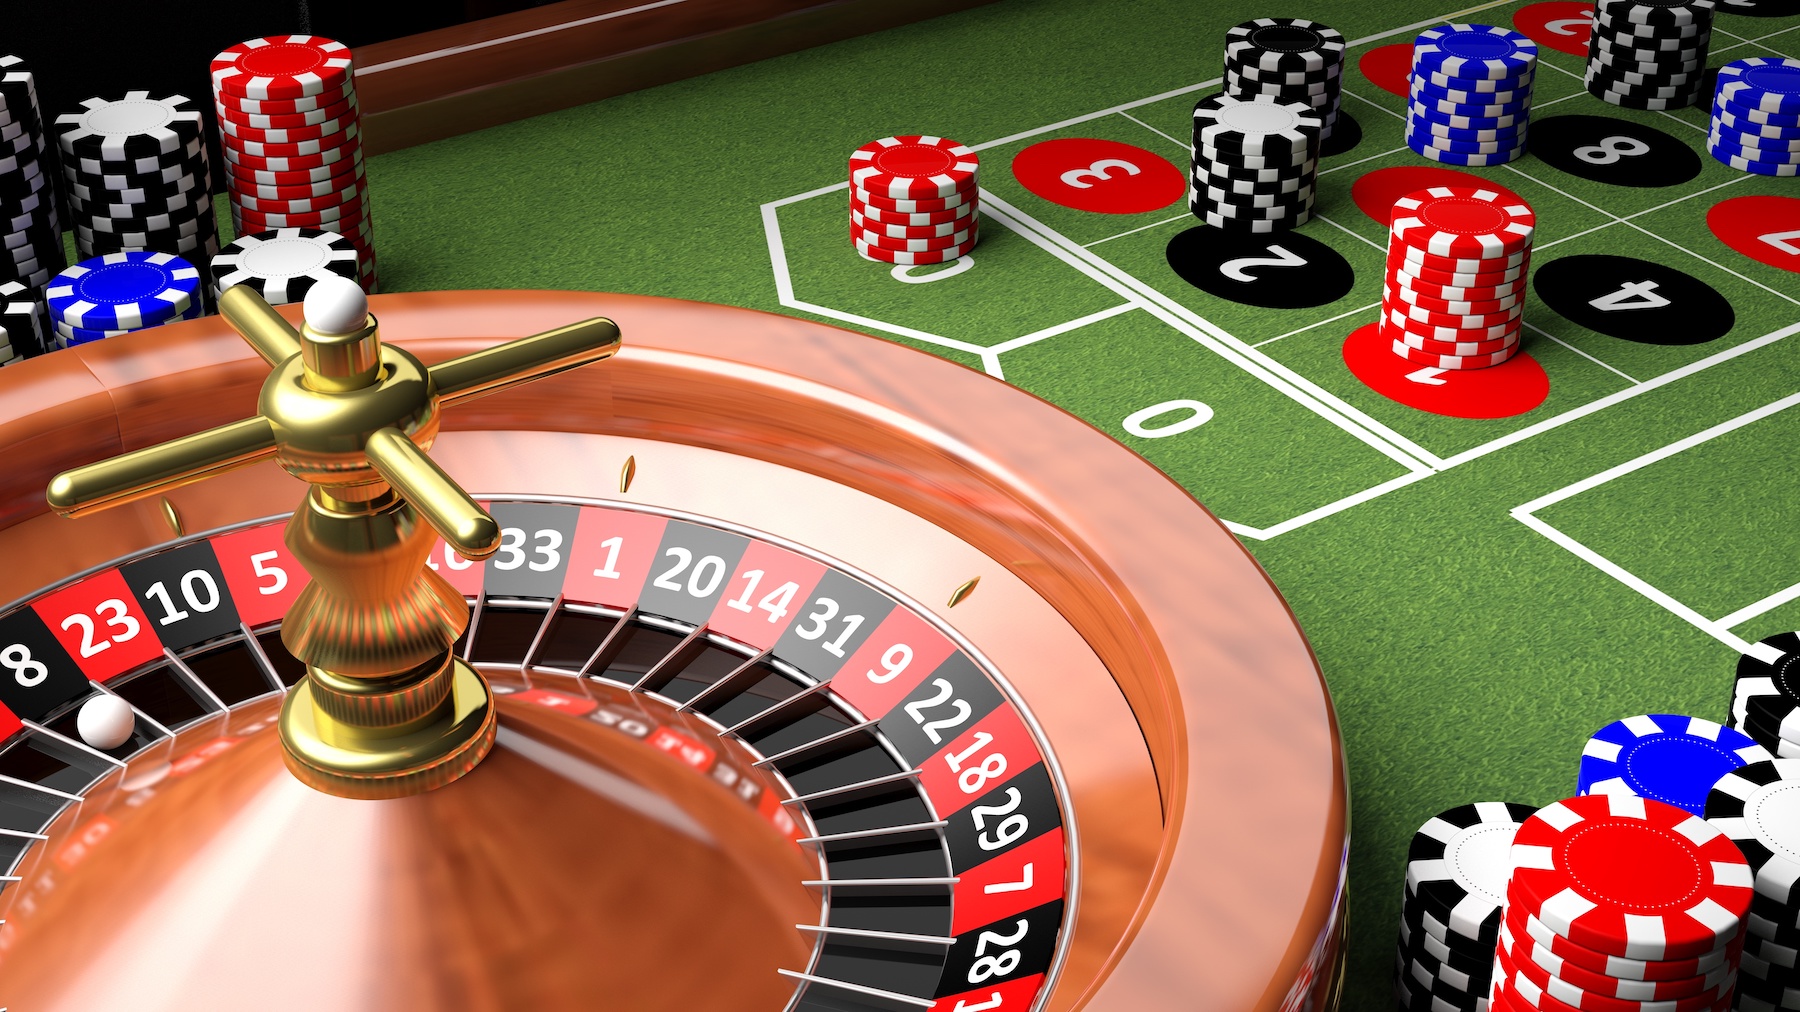 Les jeux d’argent affectent notre capacité à raisonner de manière logique. © viperagp, Adobe Stock